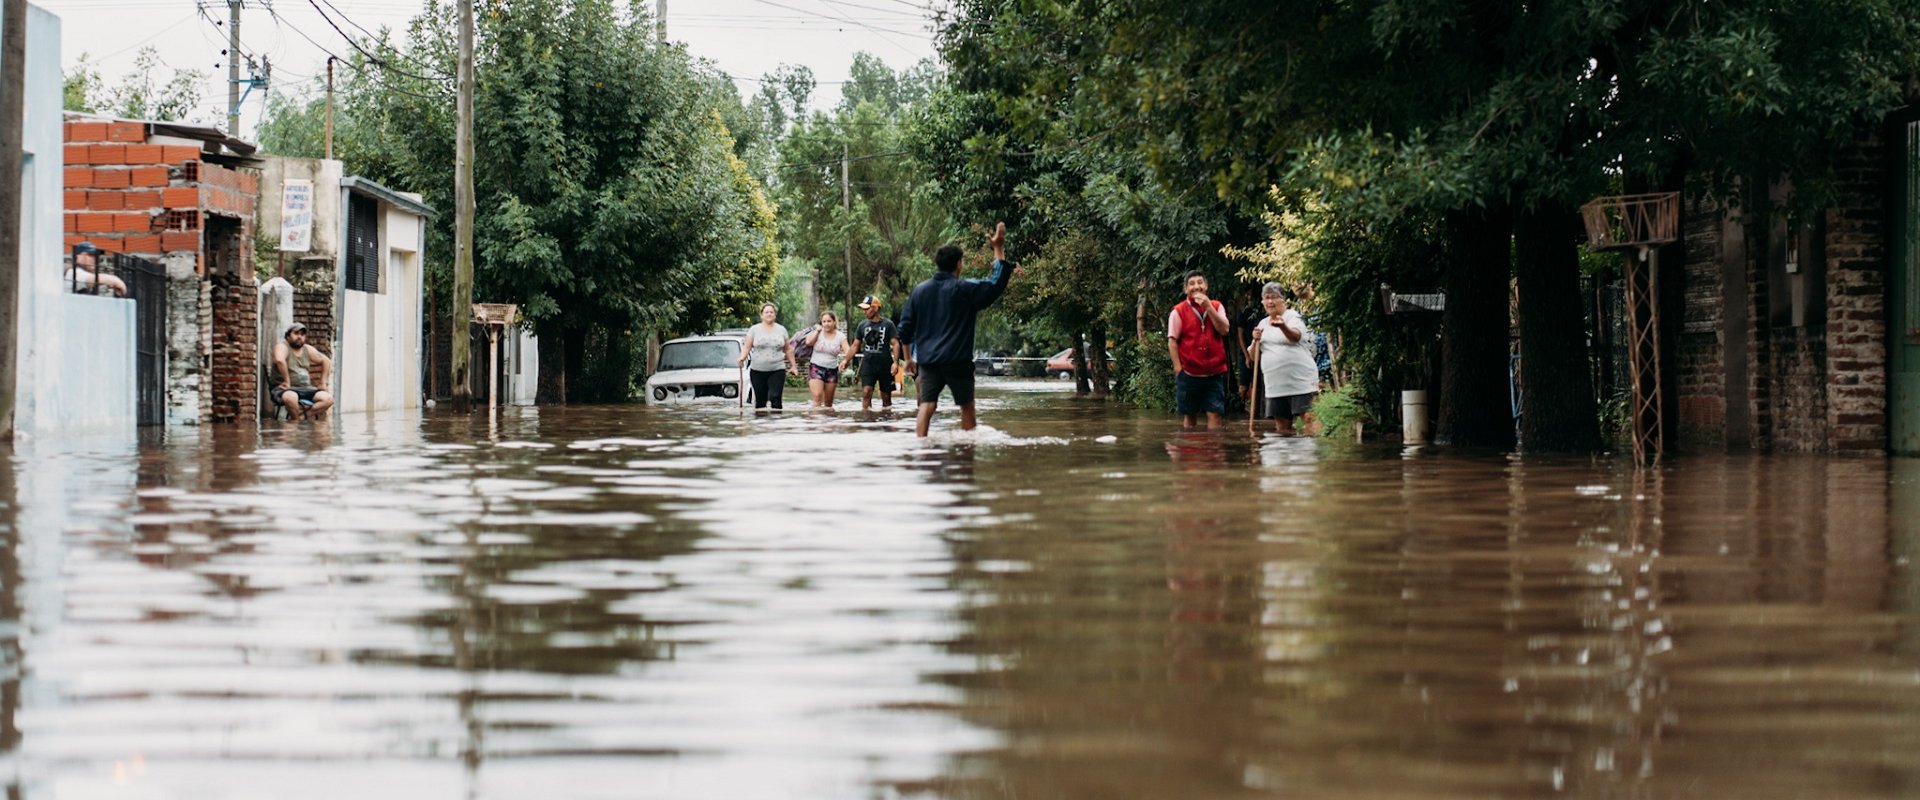 Salud brinda recomendaciones a la población ante situaciones de inundación o anegamiento